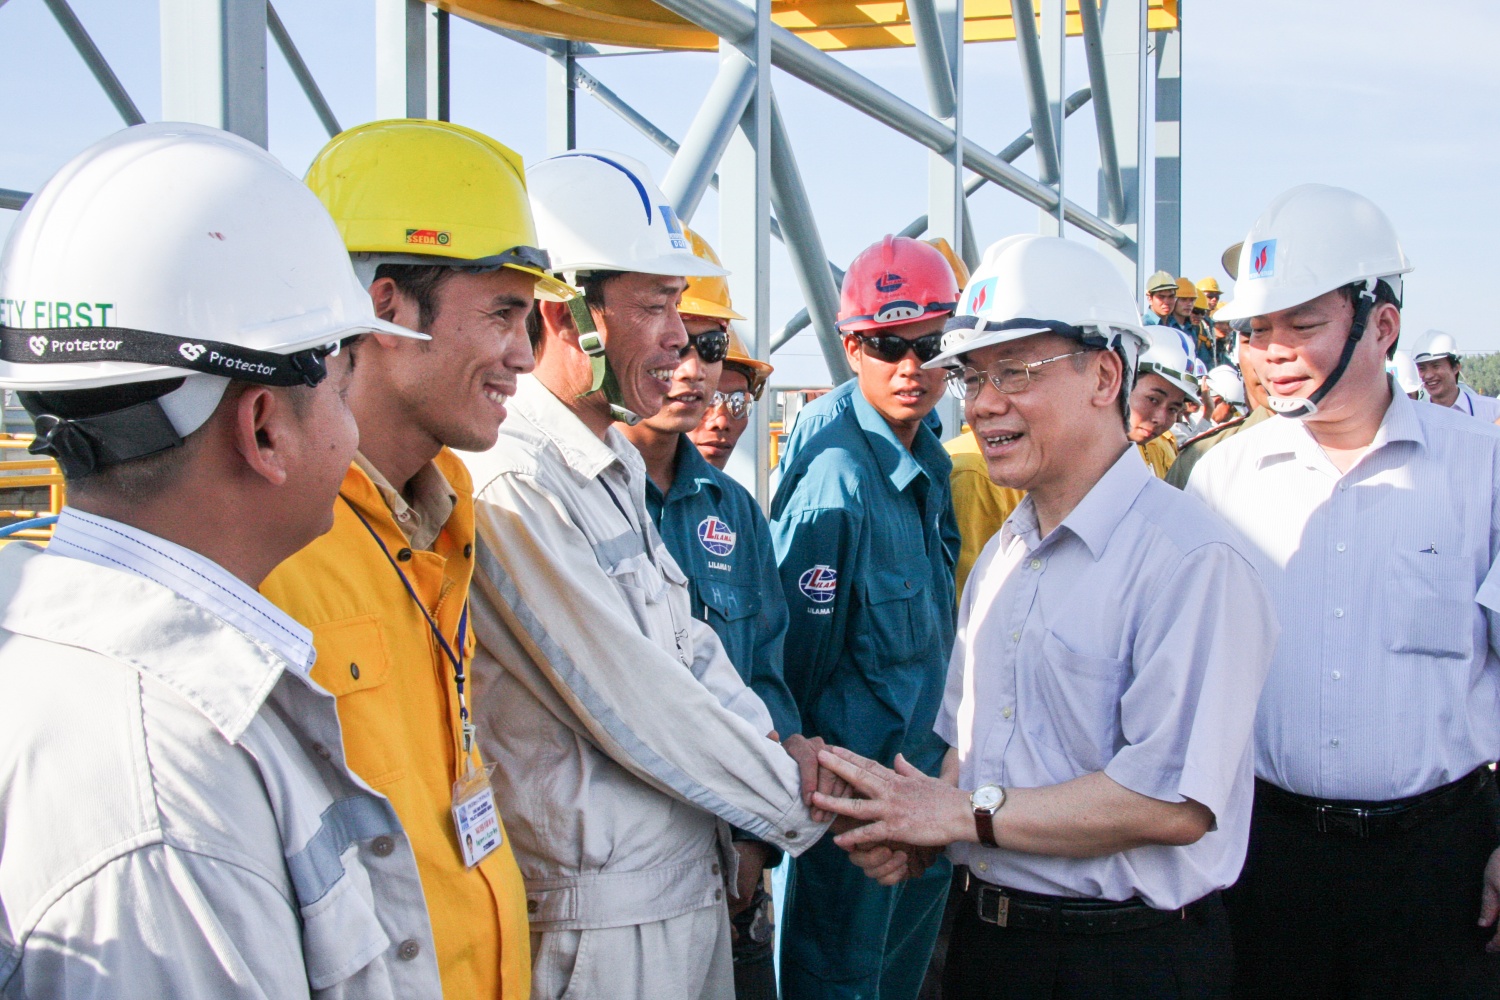 Đồng chí Tổng Bí thư luôn động viên, tin tưởng sự phát triển của Tập đoàn Dầu khí Việt Nam và đội ngũ người lao động Dầu khí